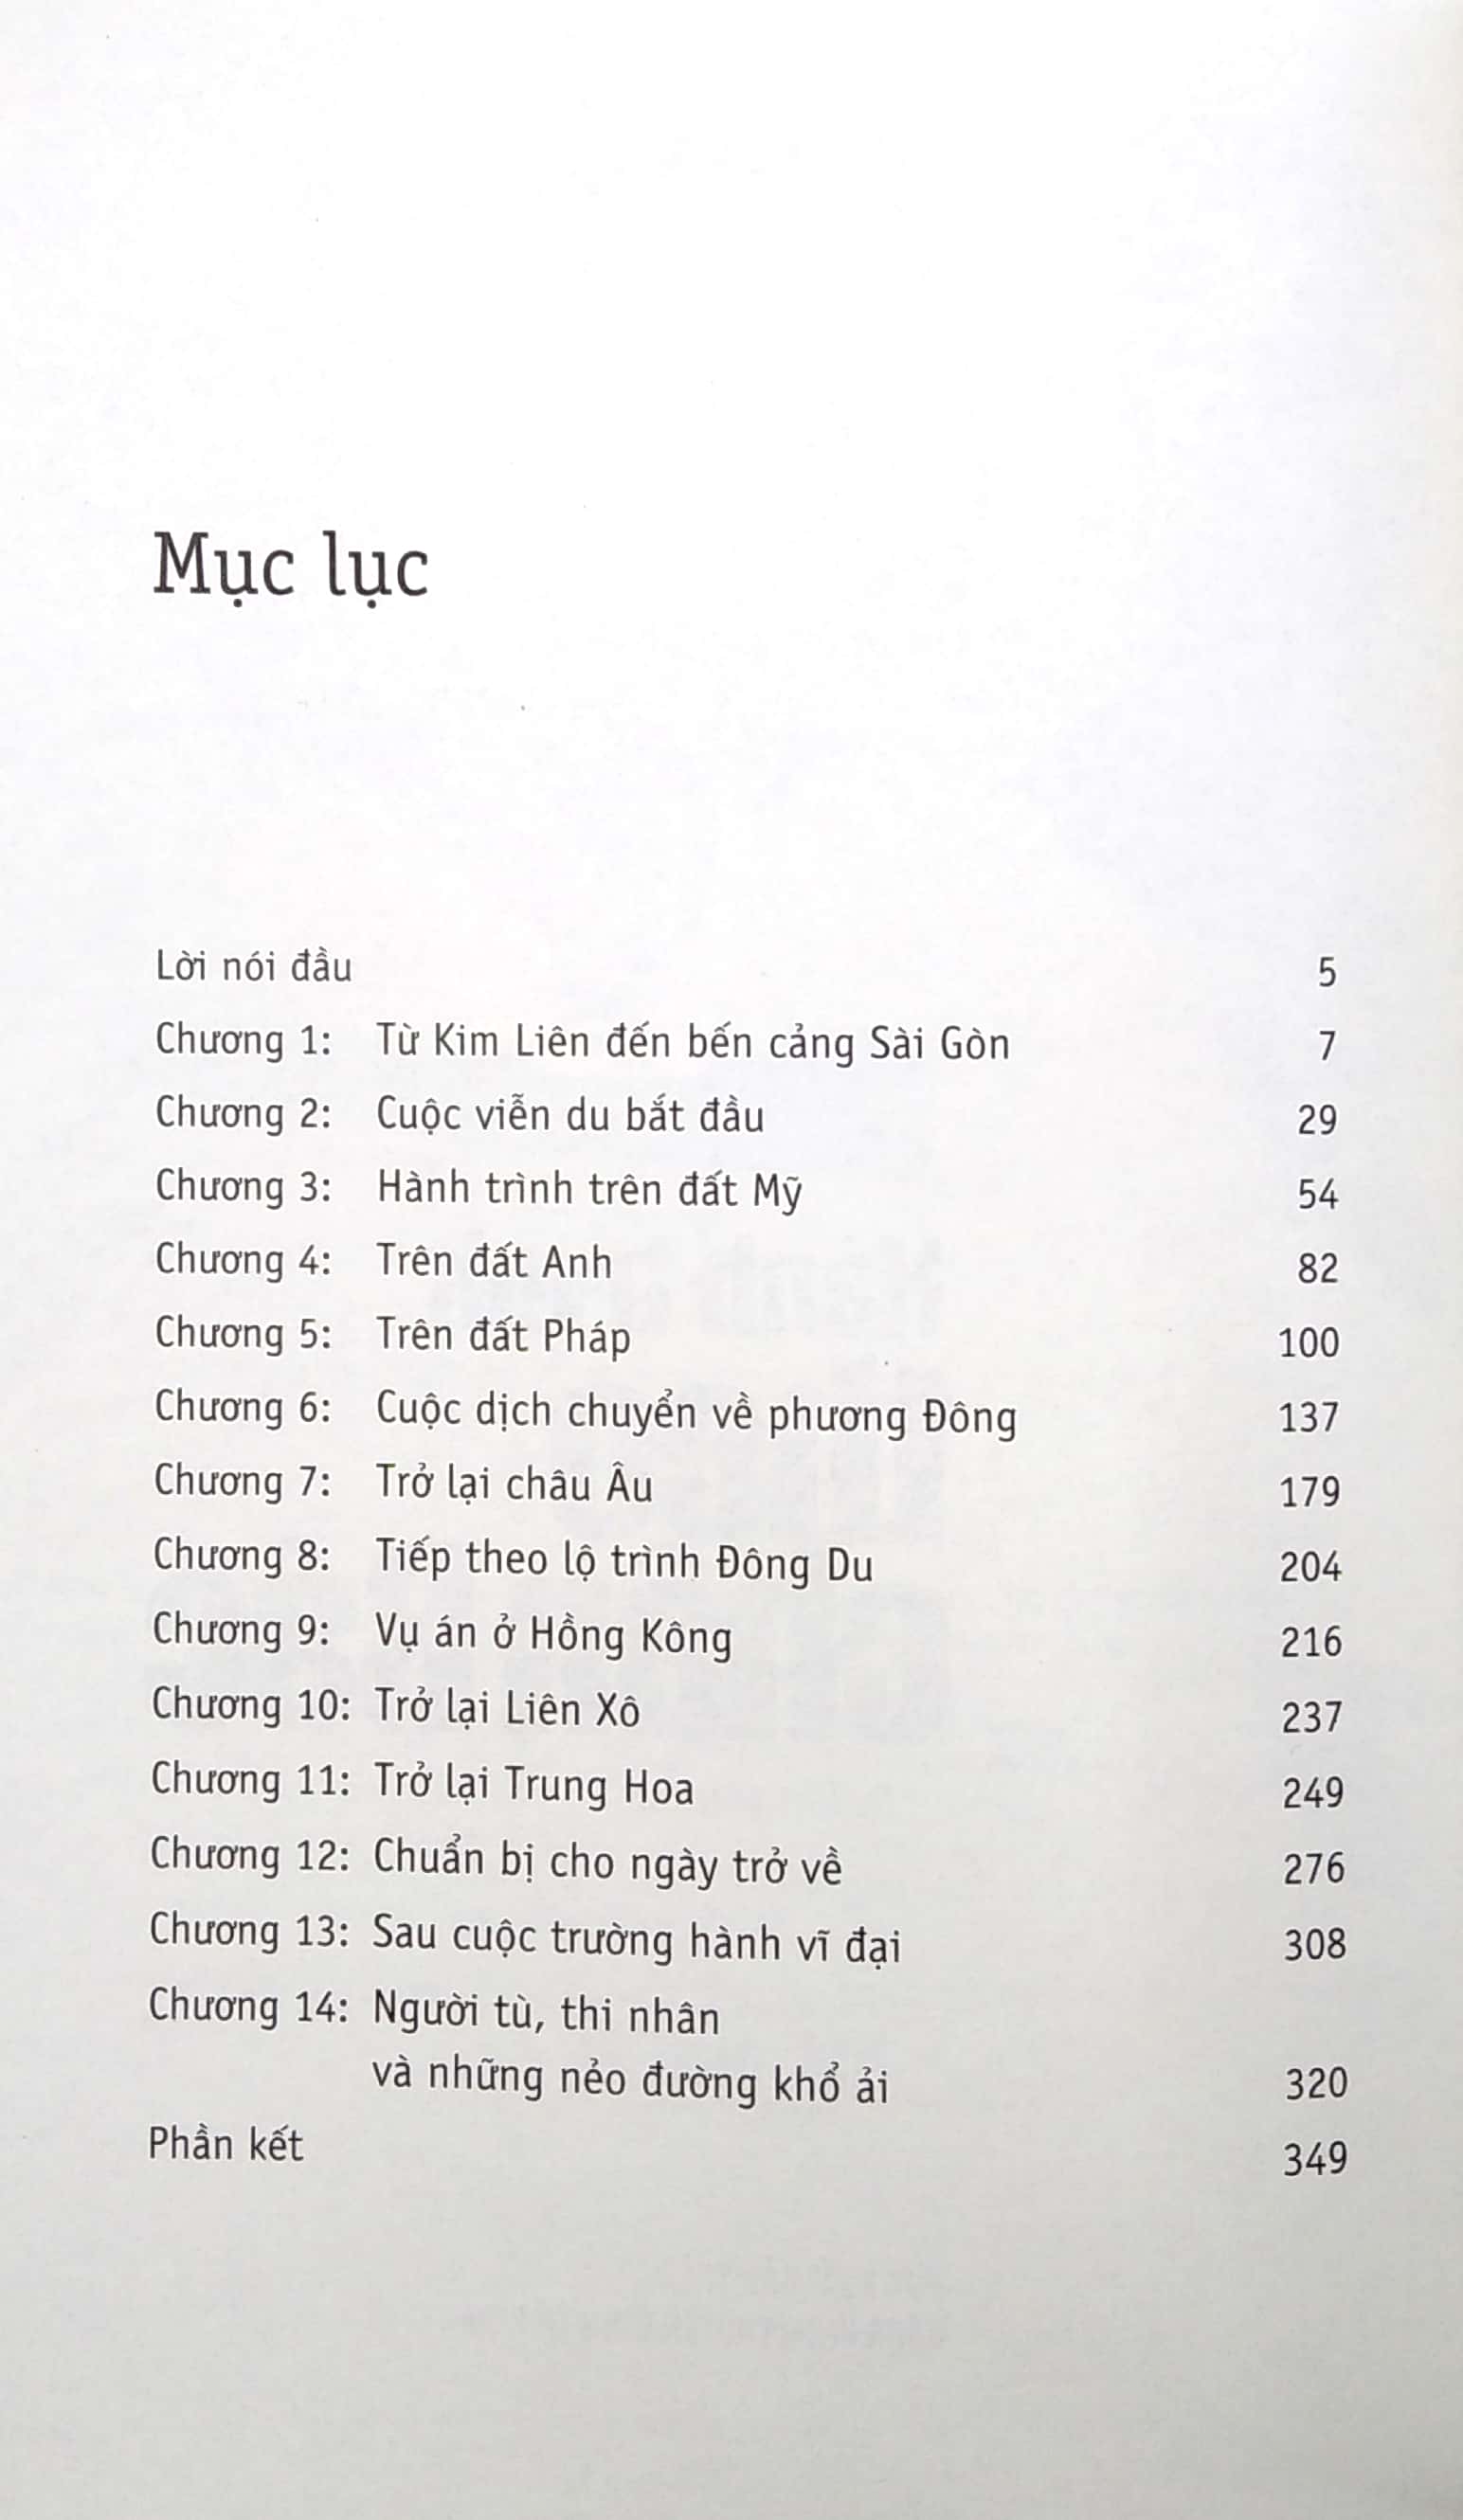 Di Sản Hồ Chí Minh - Hành Trình Theo Chân Bác PDF